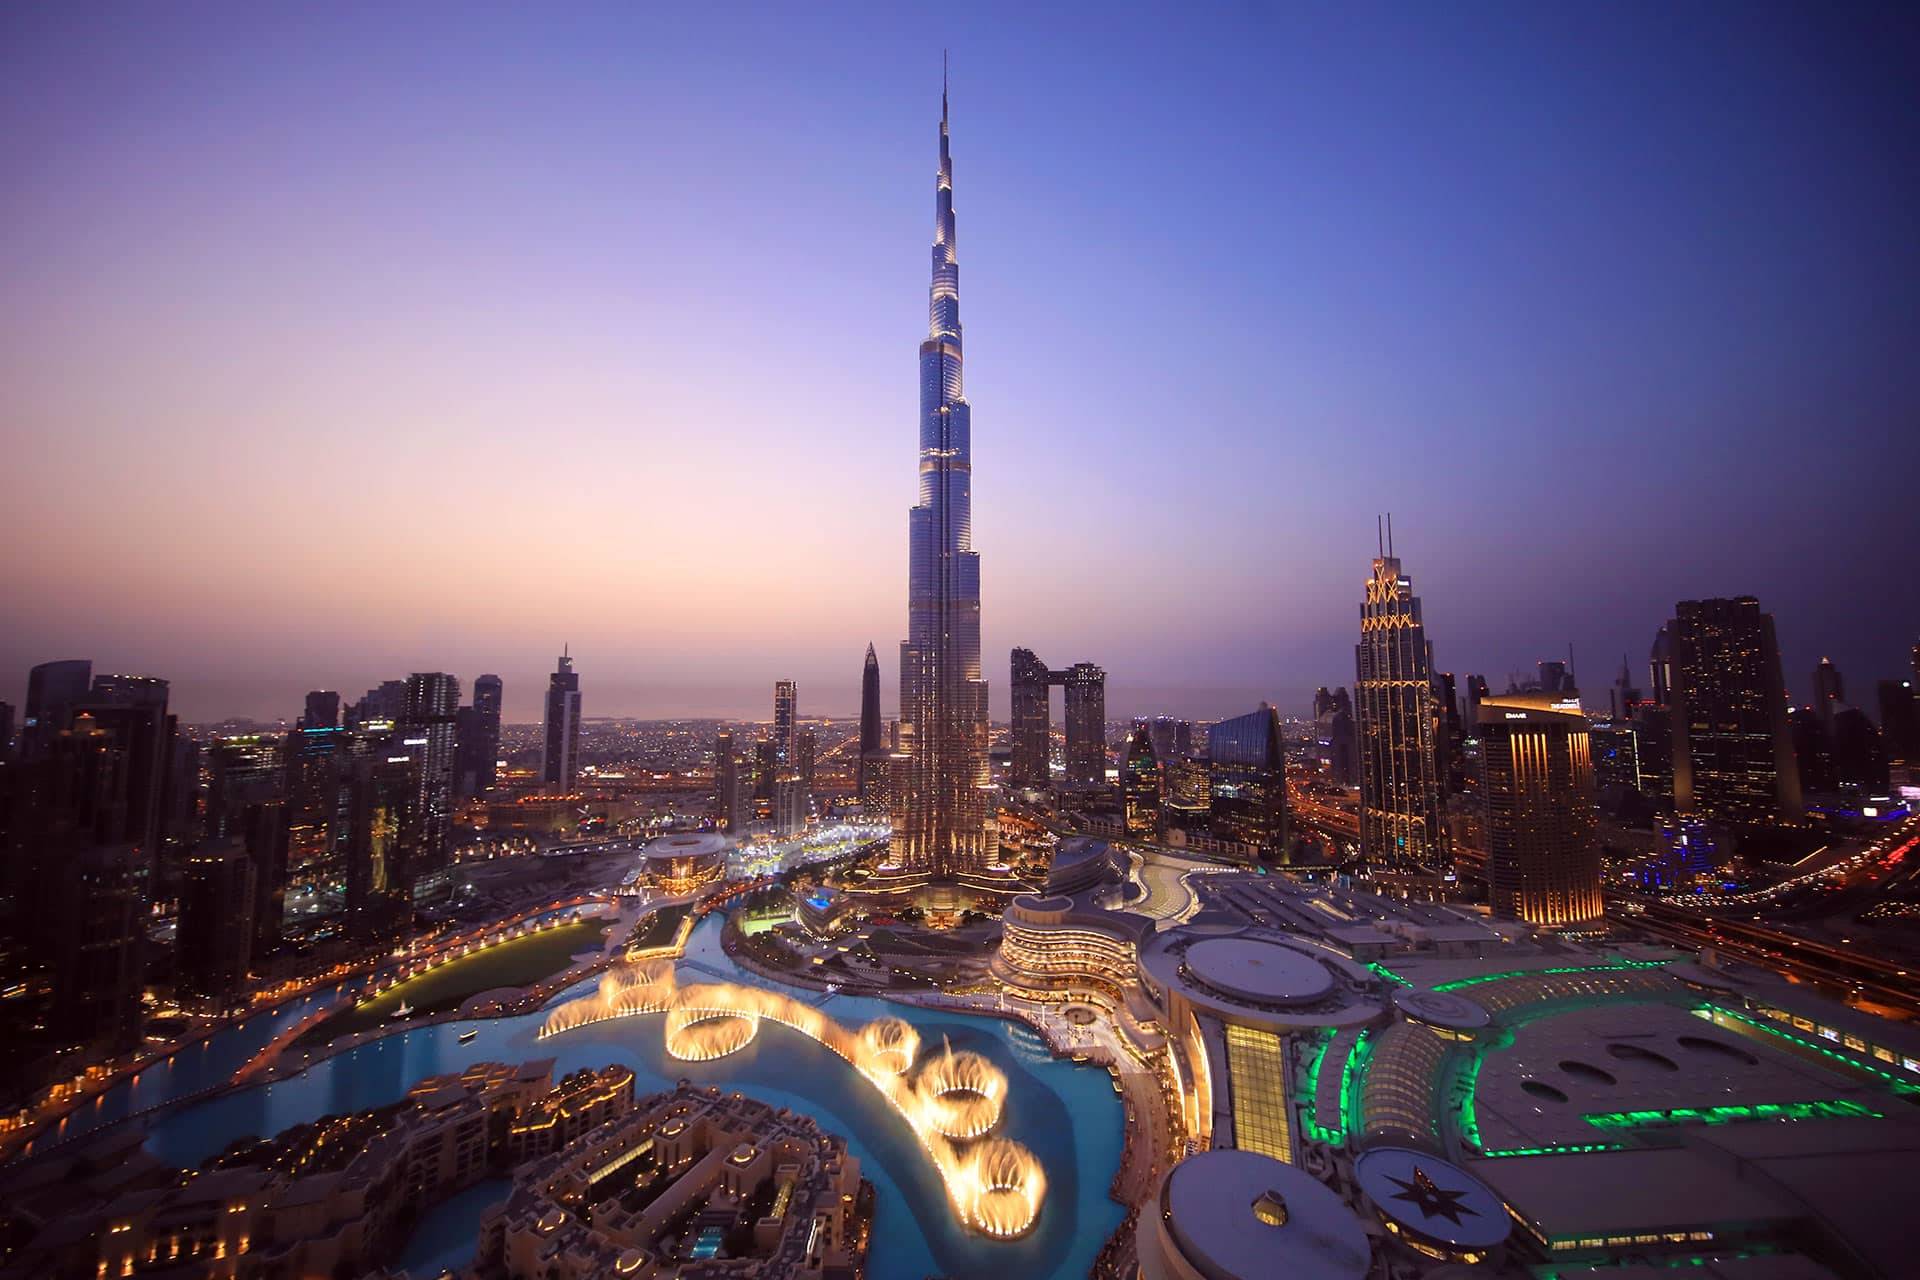 Das Foto zeigt den Burj Khalifa in Dubai bei Dämmerung, umgeben von der beleuchteten Skyline und den Wasserspielen.